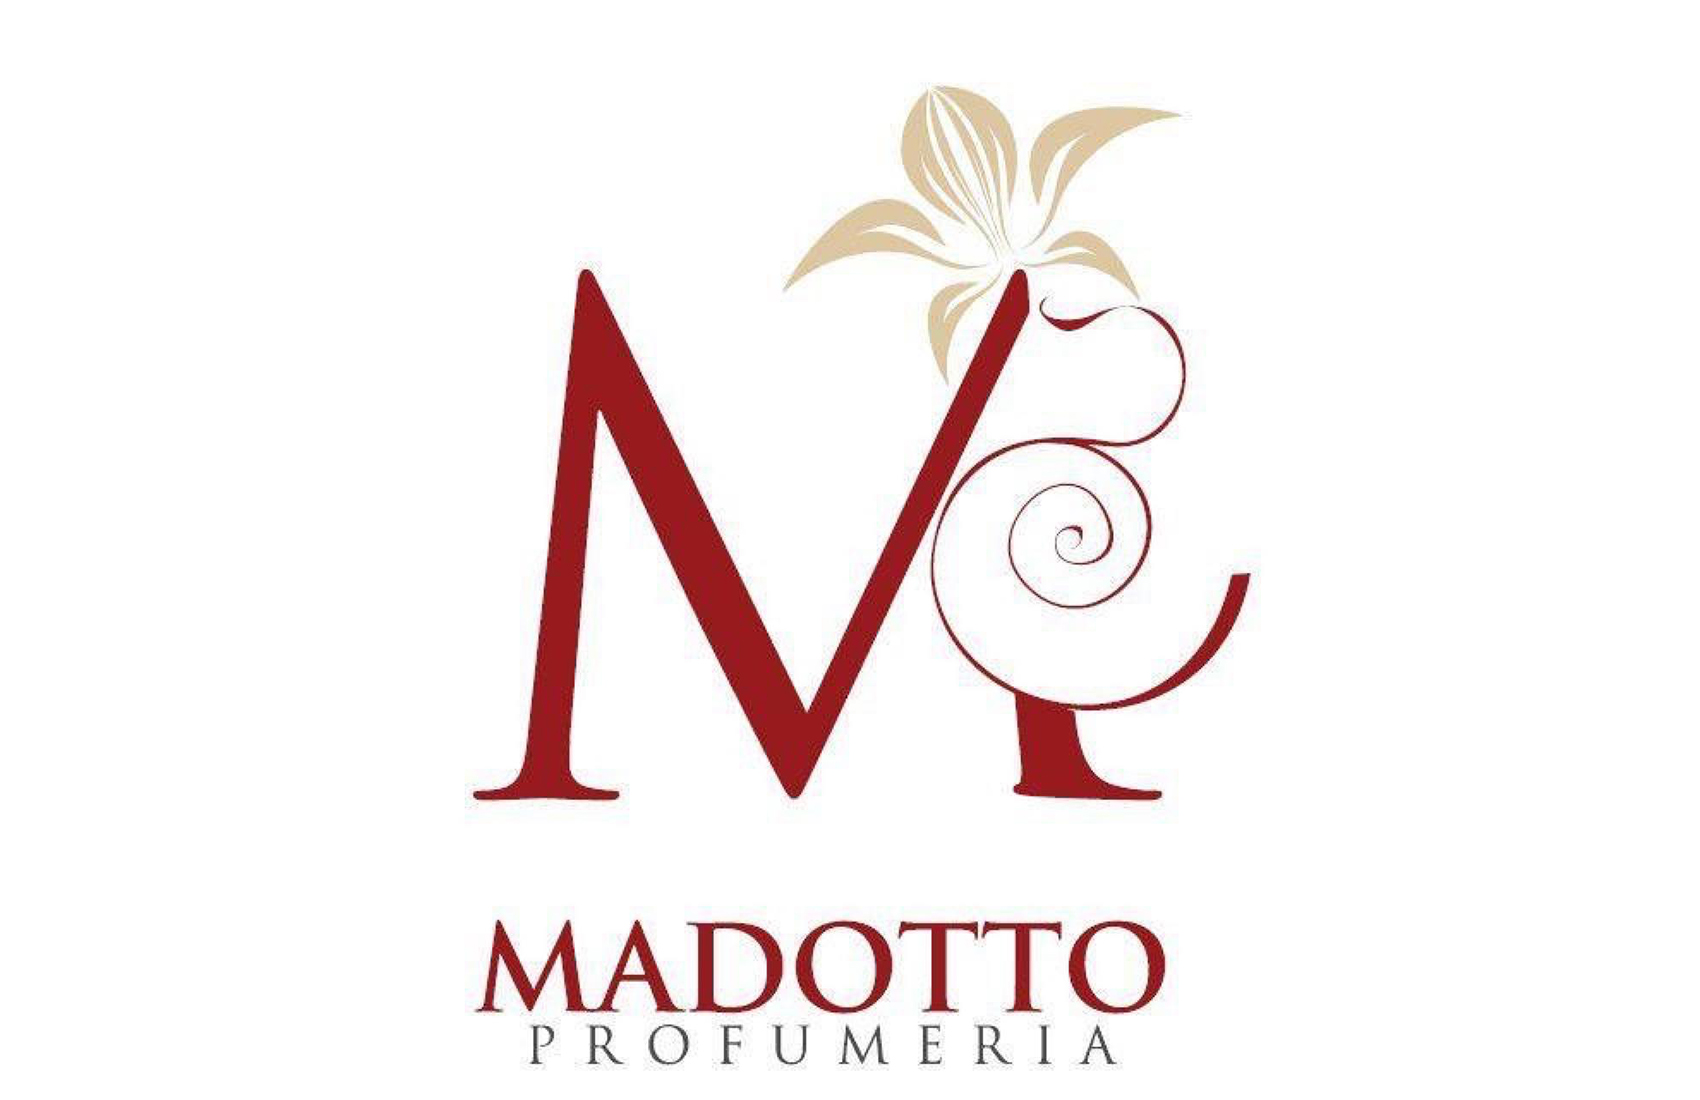 Profumeria Madotto - Cividale del Friuli